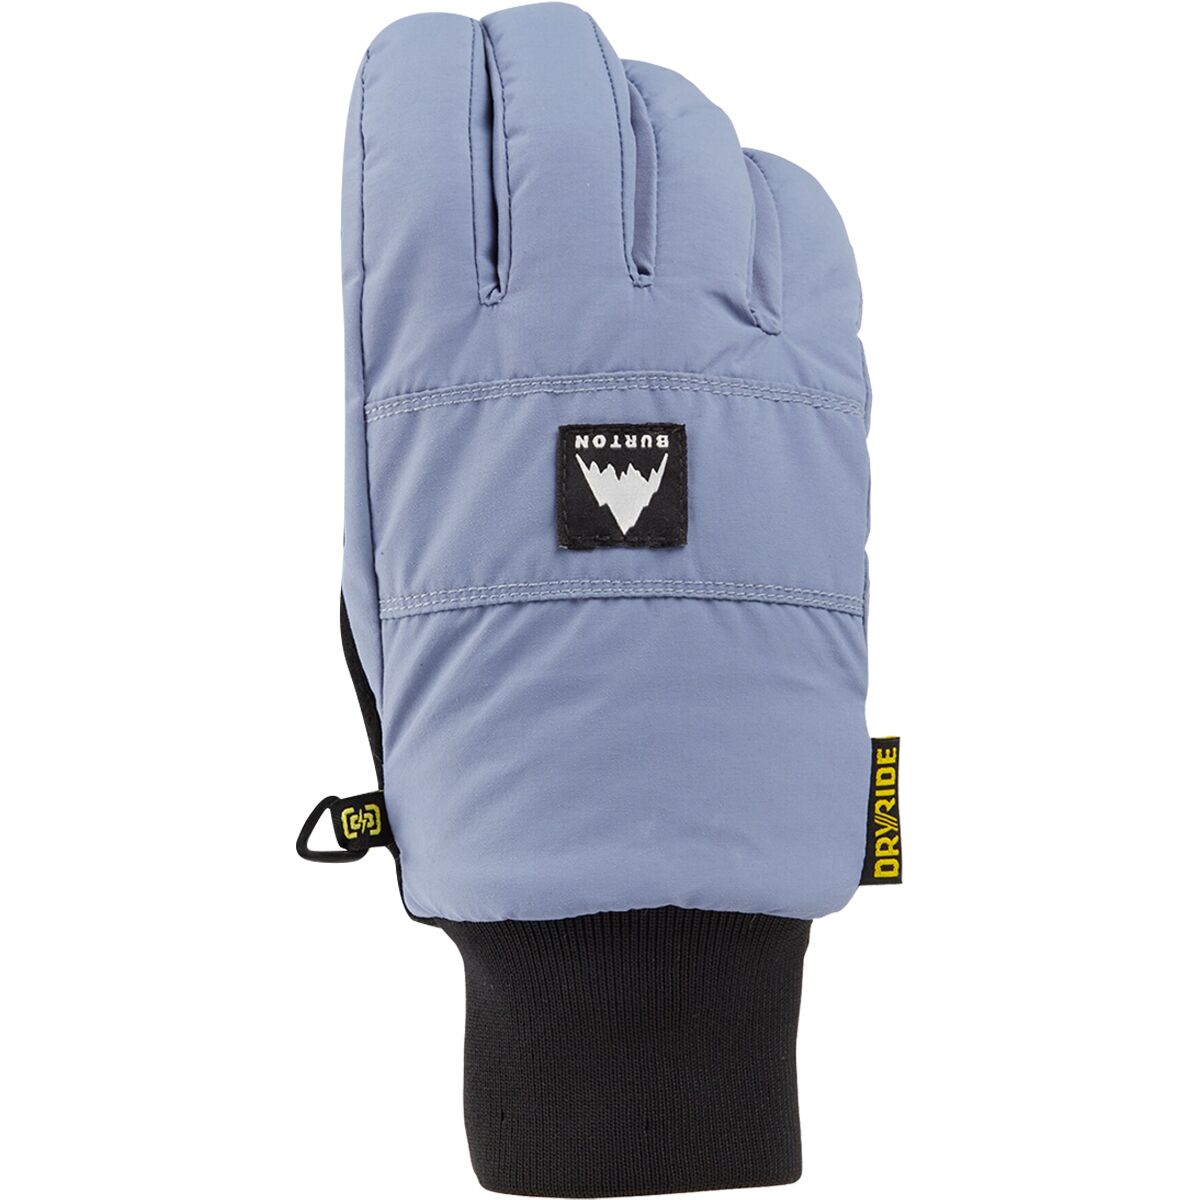 Burton Treeline Glove - Men's